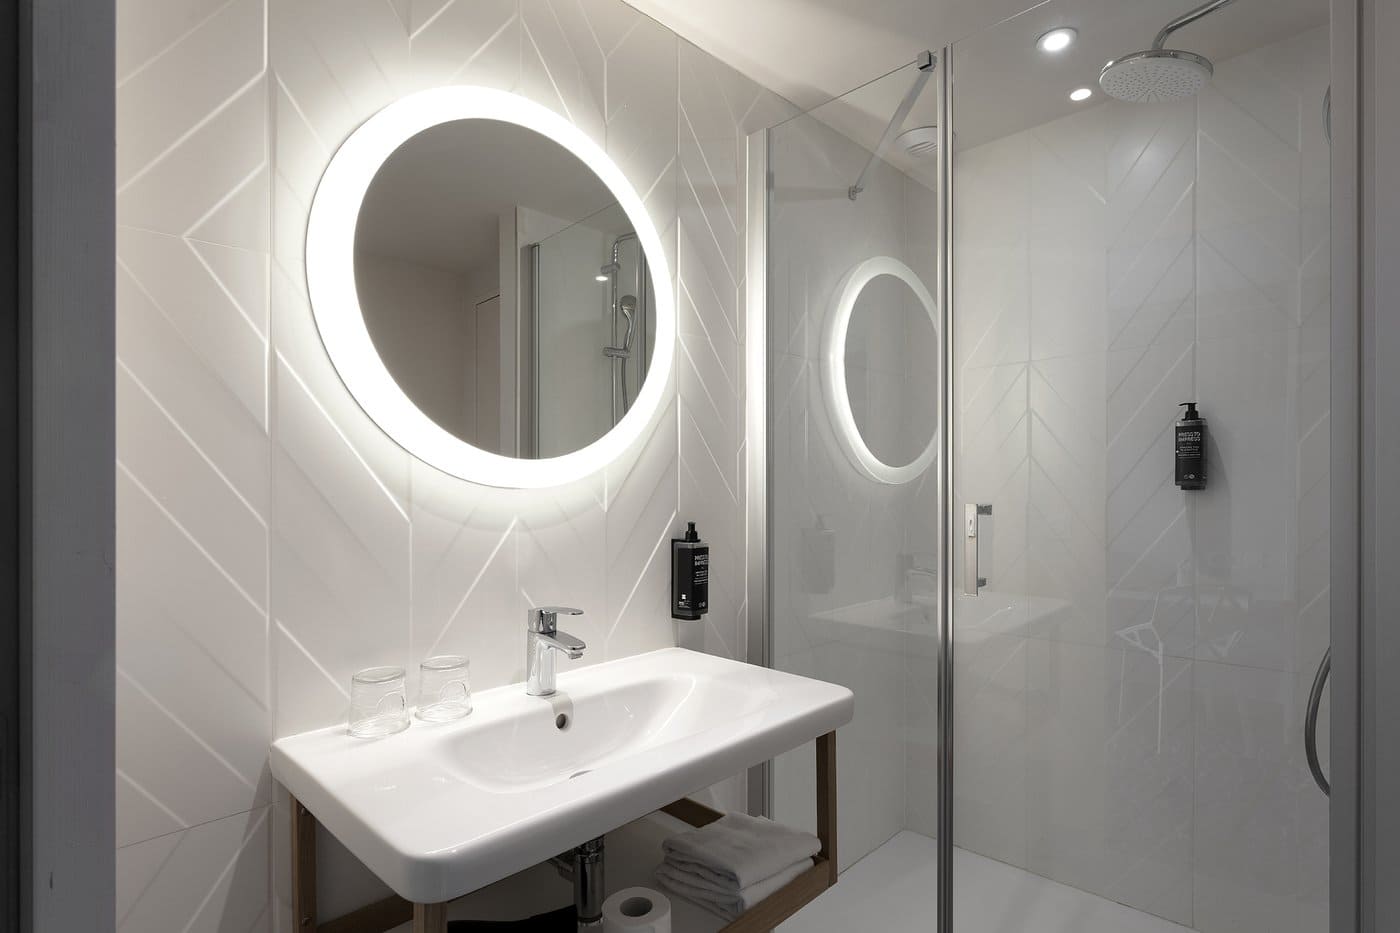 Biała łazienka - płytki trójwymiarowe na ścianie, MARCA CORONA 4D chevron white 40x80